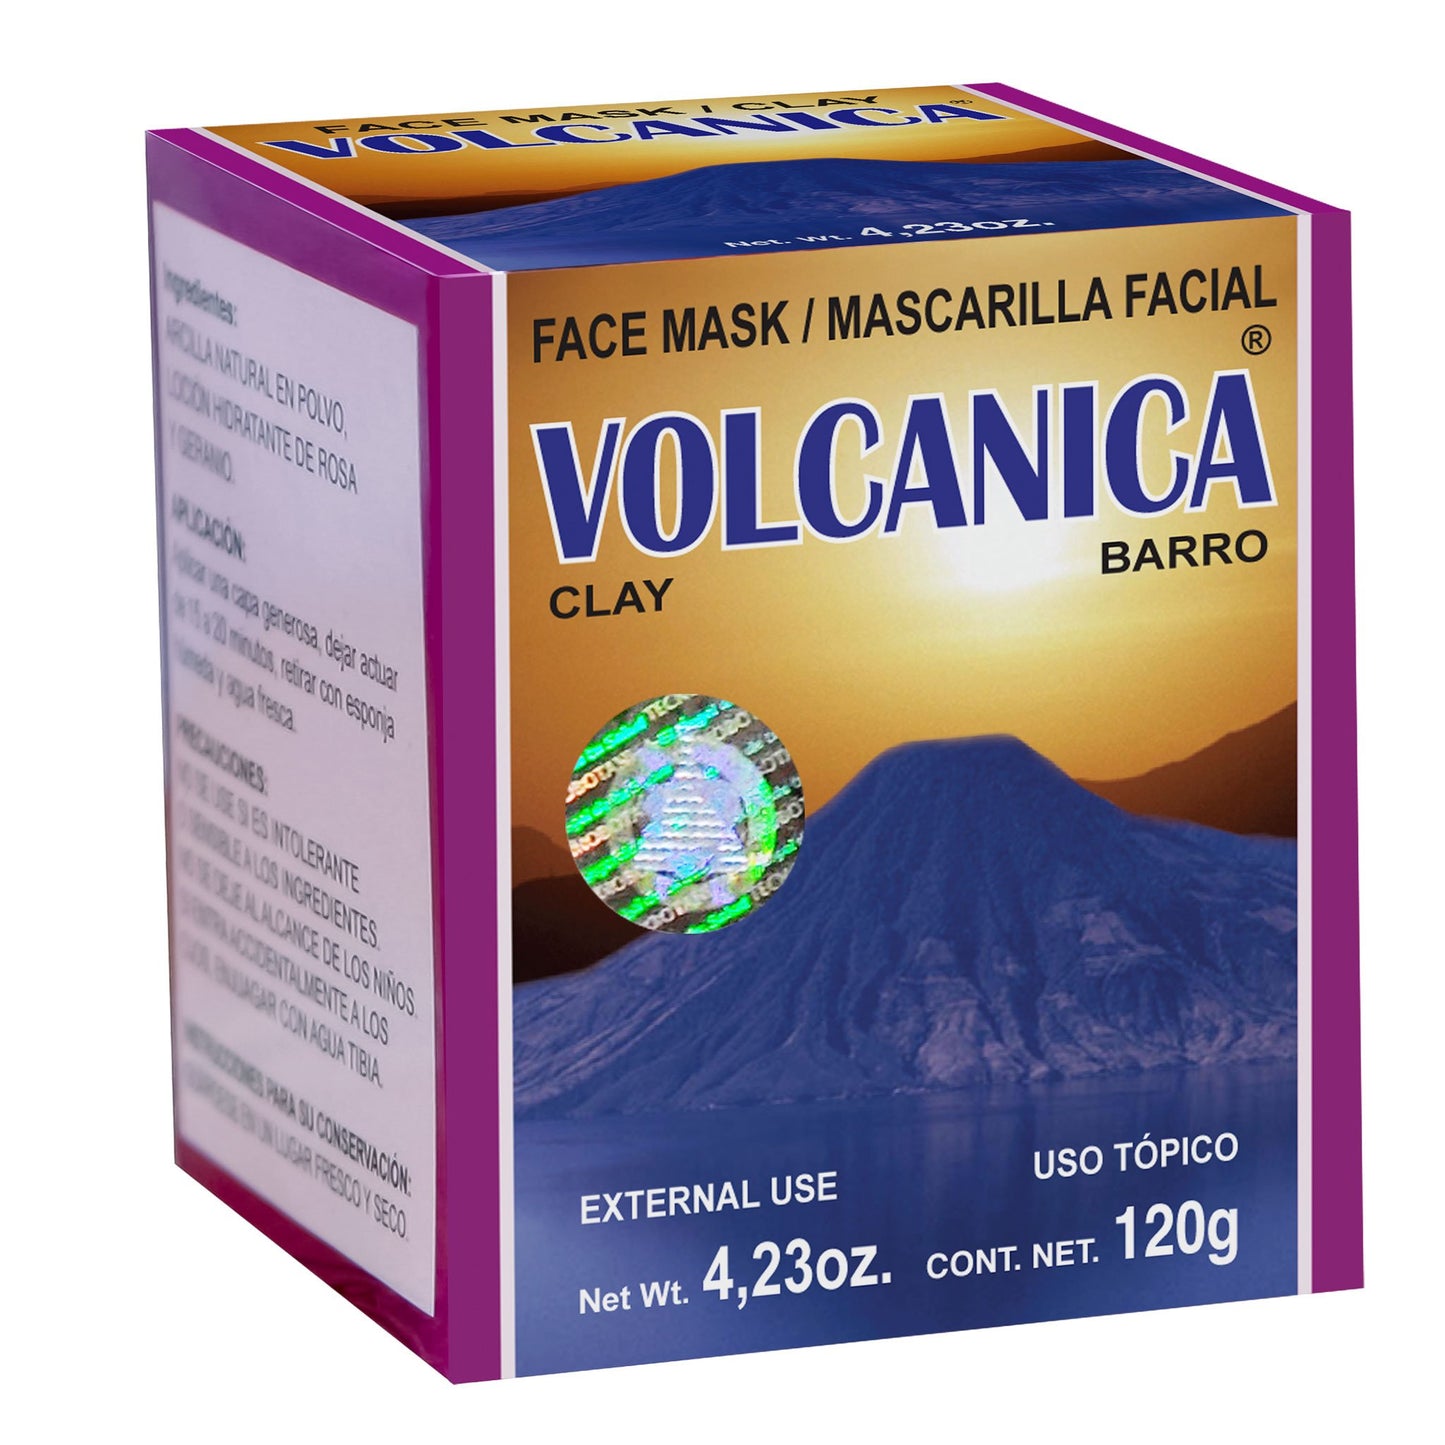 VOLCANICA ® mascarilla facial 120g